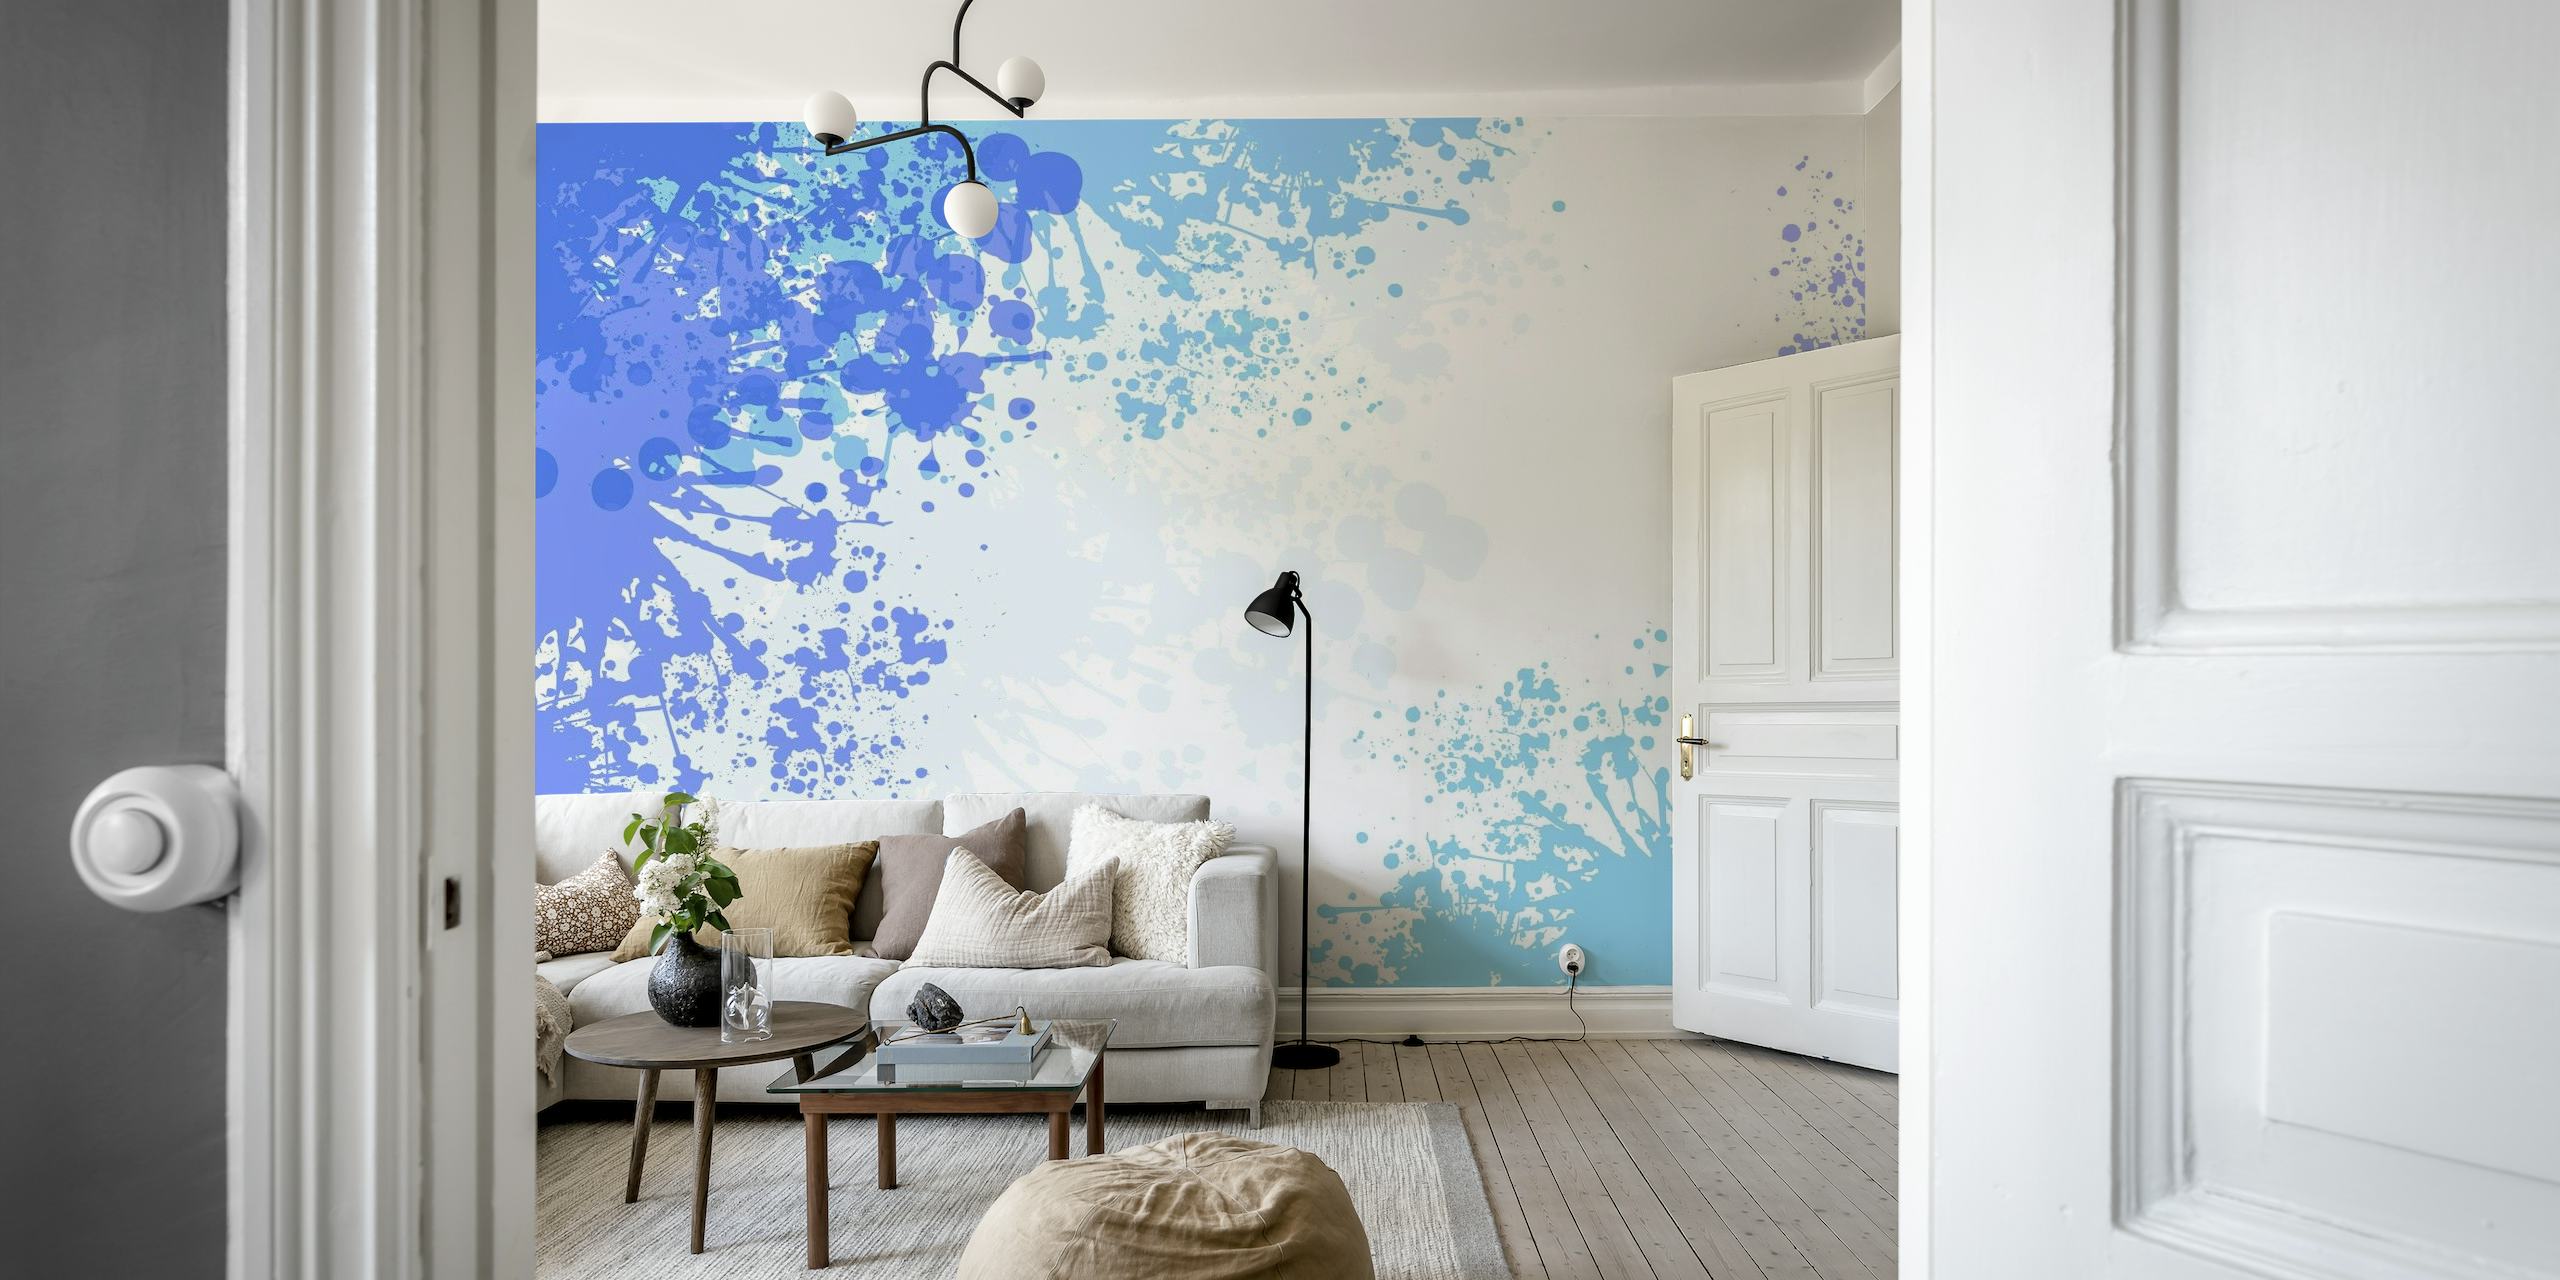 Abstract lichtblauw splash art fotobehang met een mix van witte en diepere blauwe druppels op de muur.